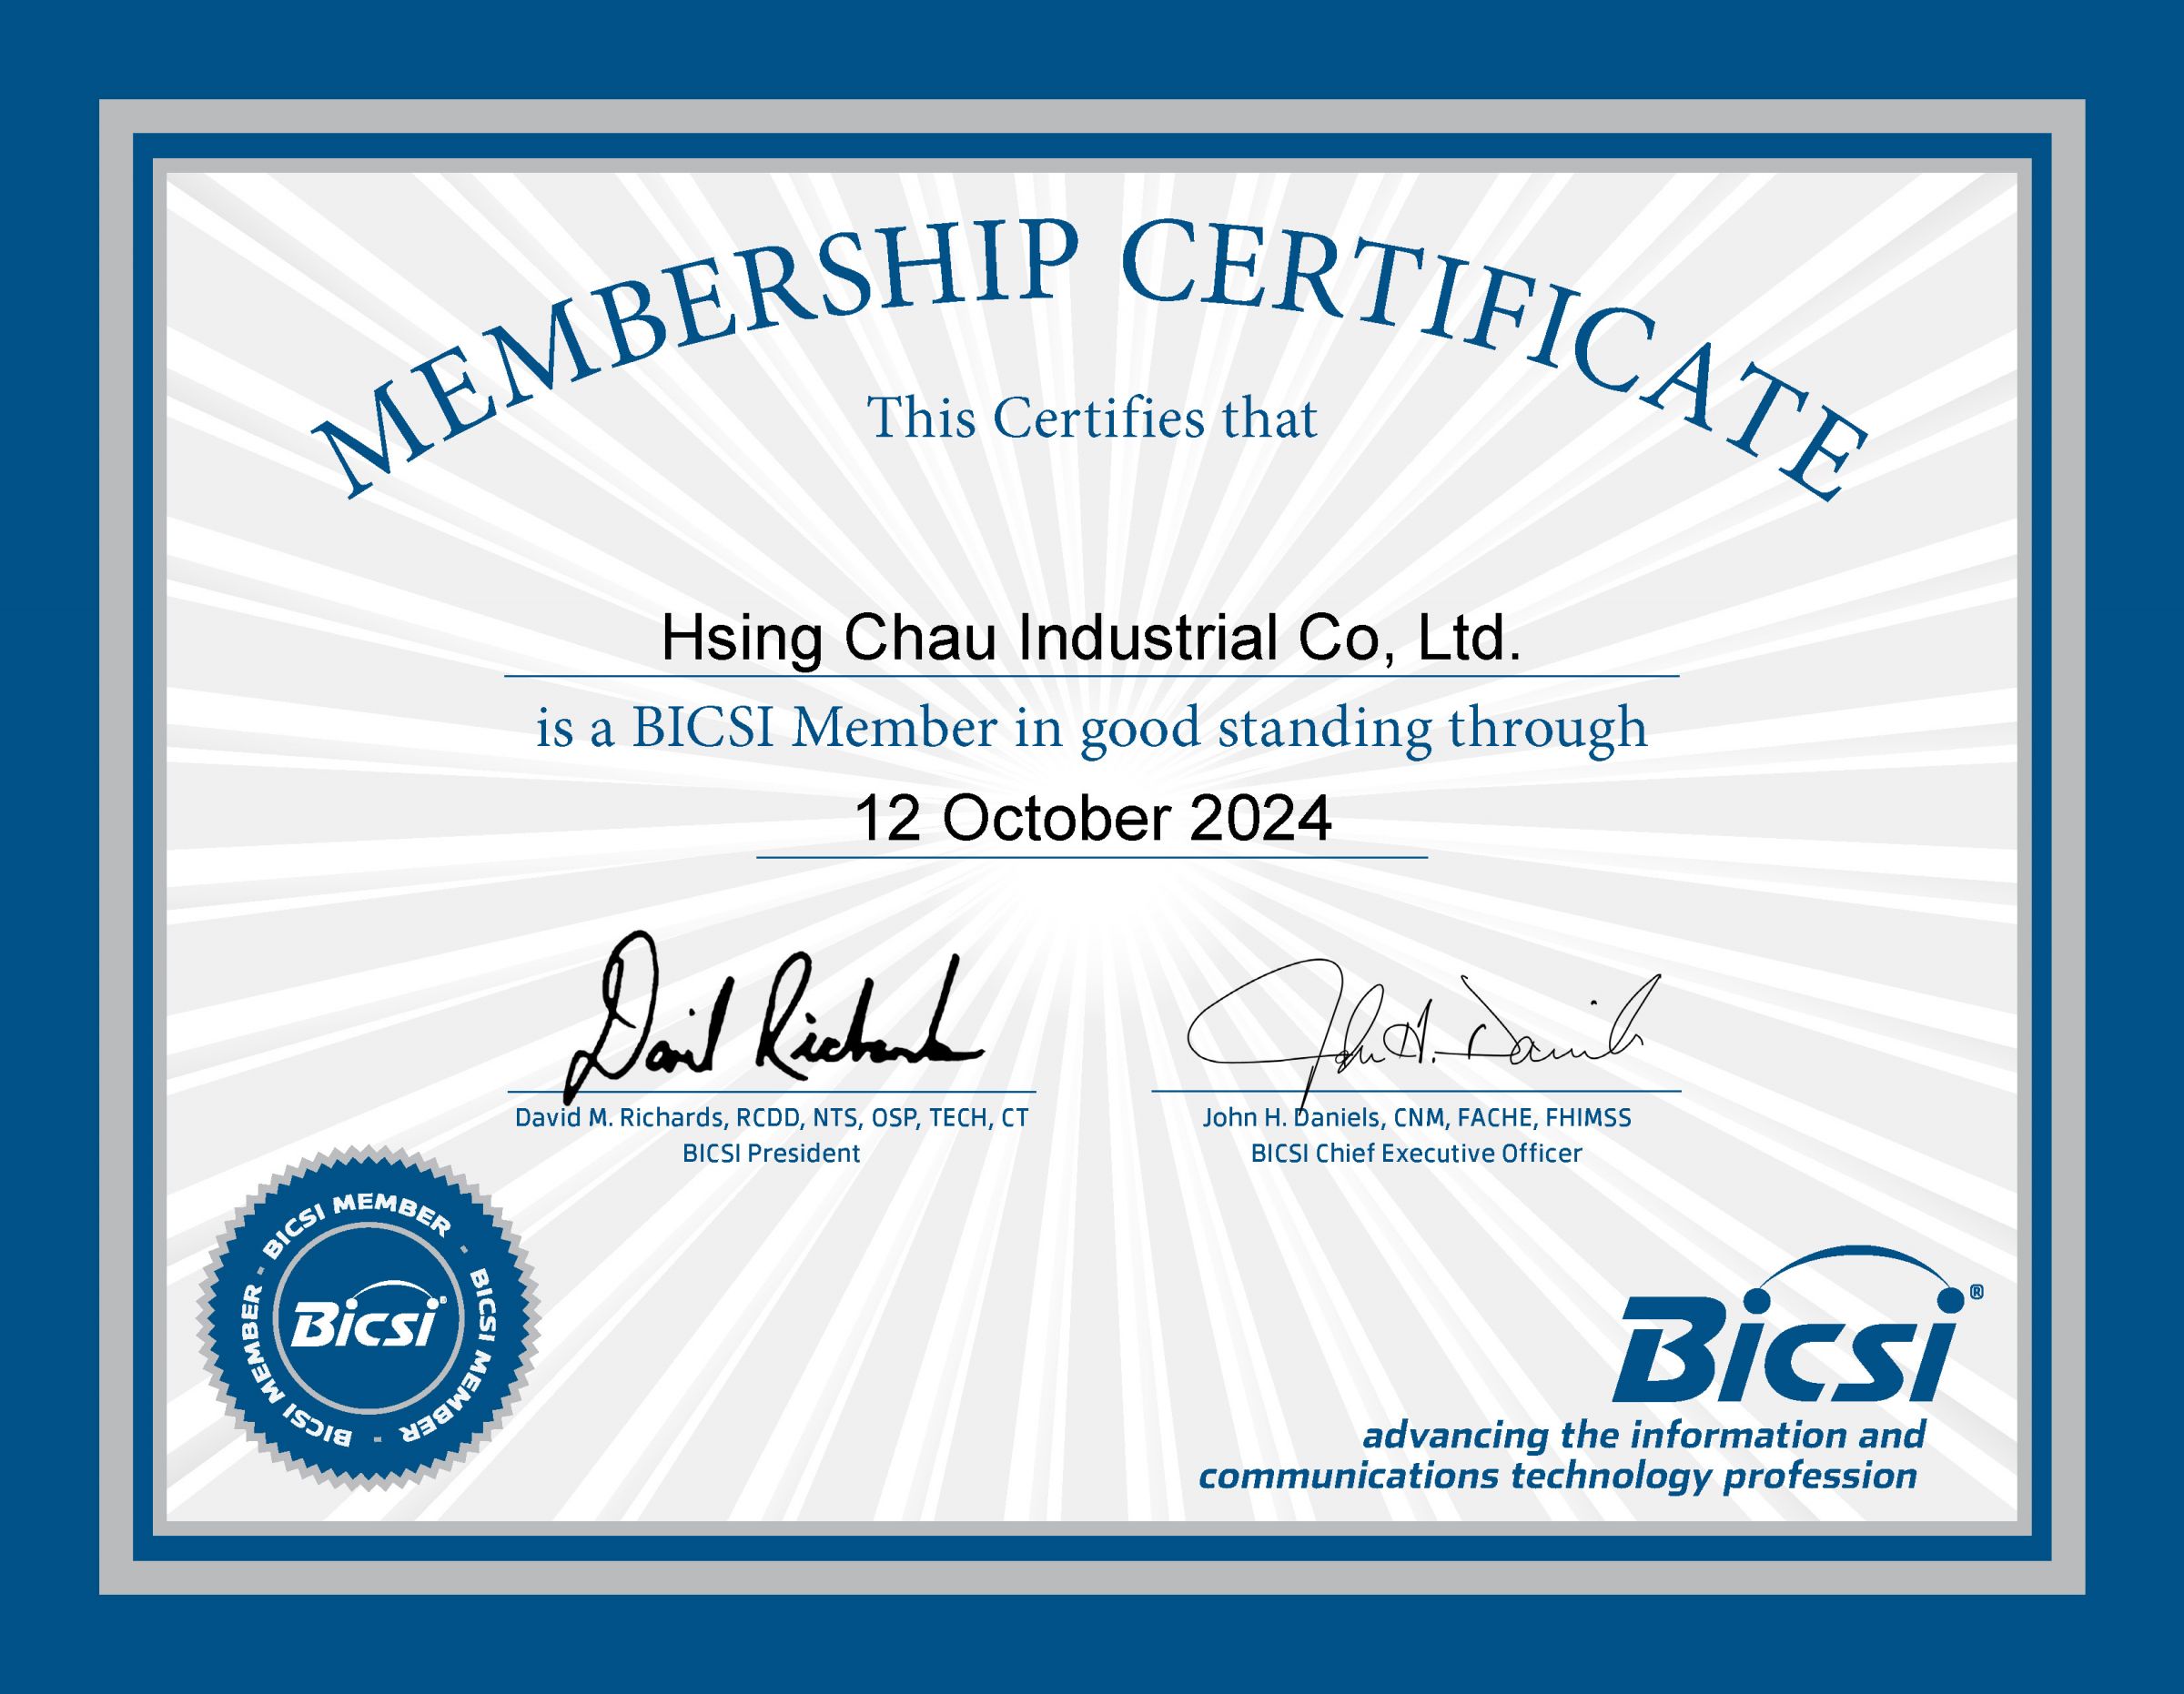 HCI se une a BICSI como miembro corporativo - Certificado de Membresía Corporativa de HCI en BICSI